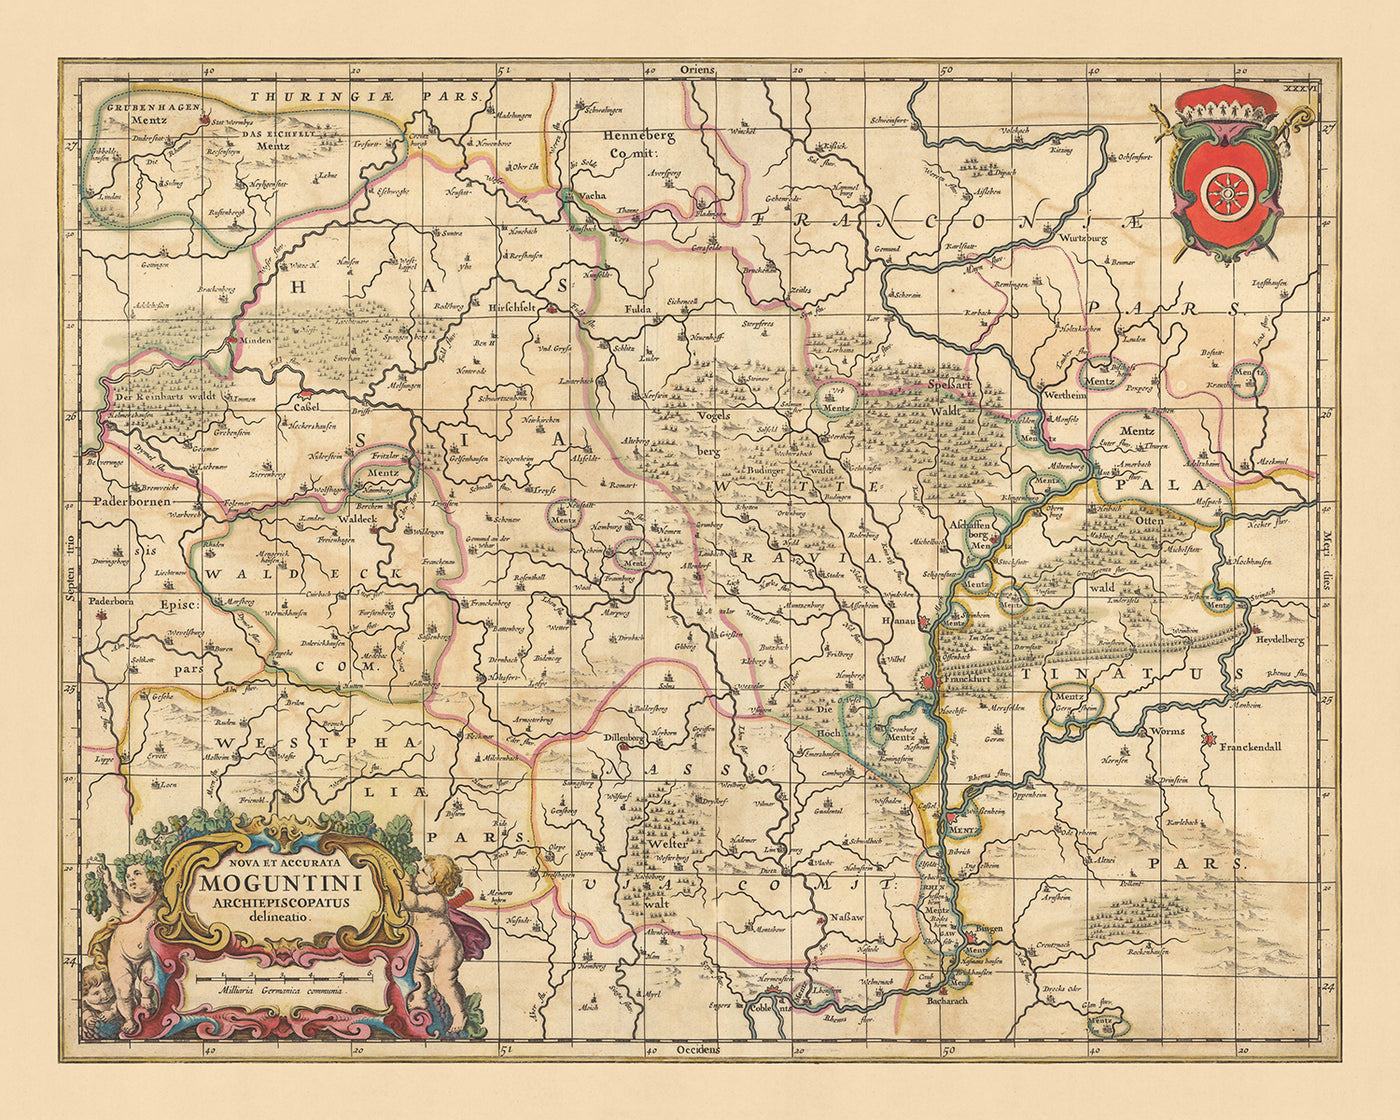 Old Map of Archbishopric of Mainz by Visscher, 1690: Frankfurt, Darmstadt, Kassel, Mannheim, Göttingen